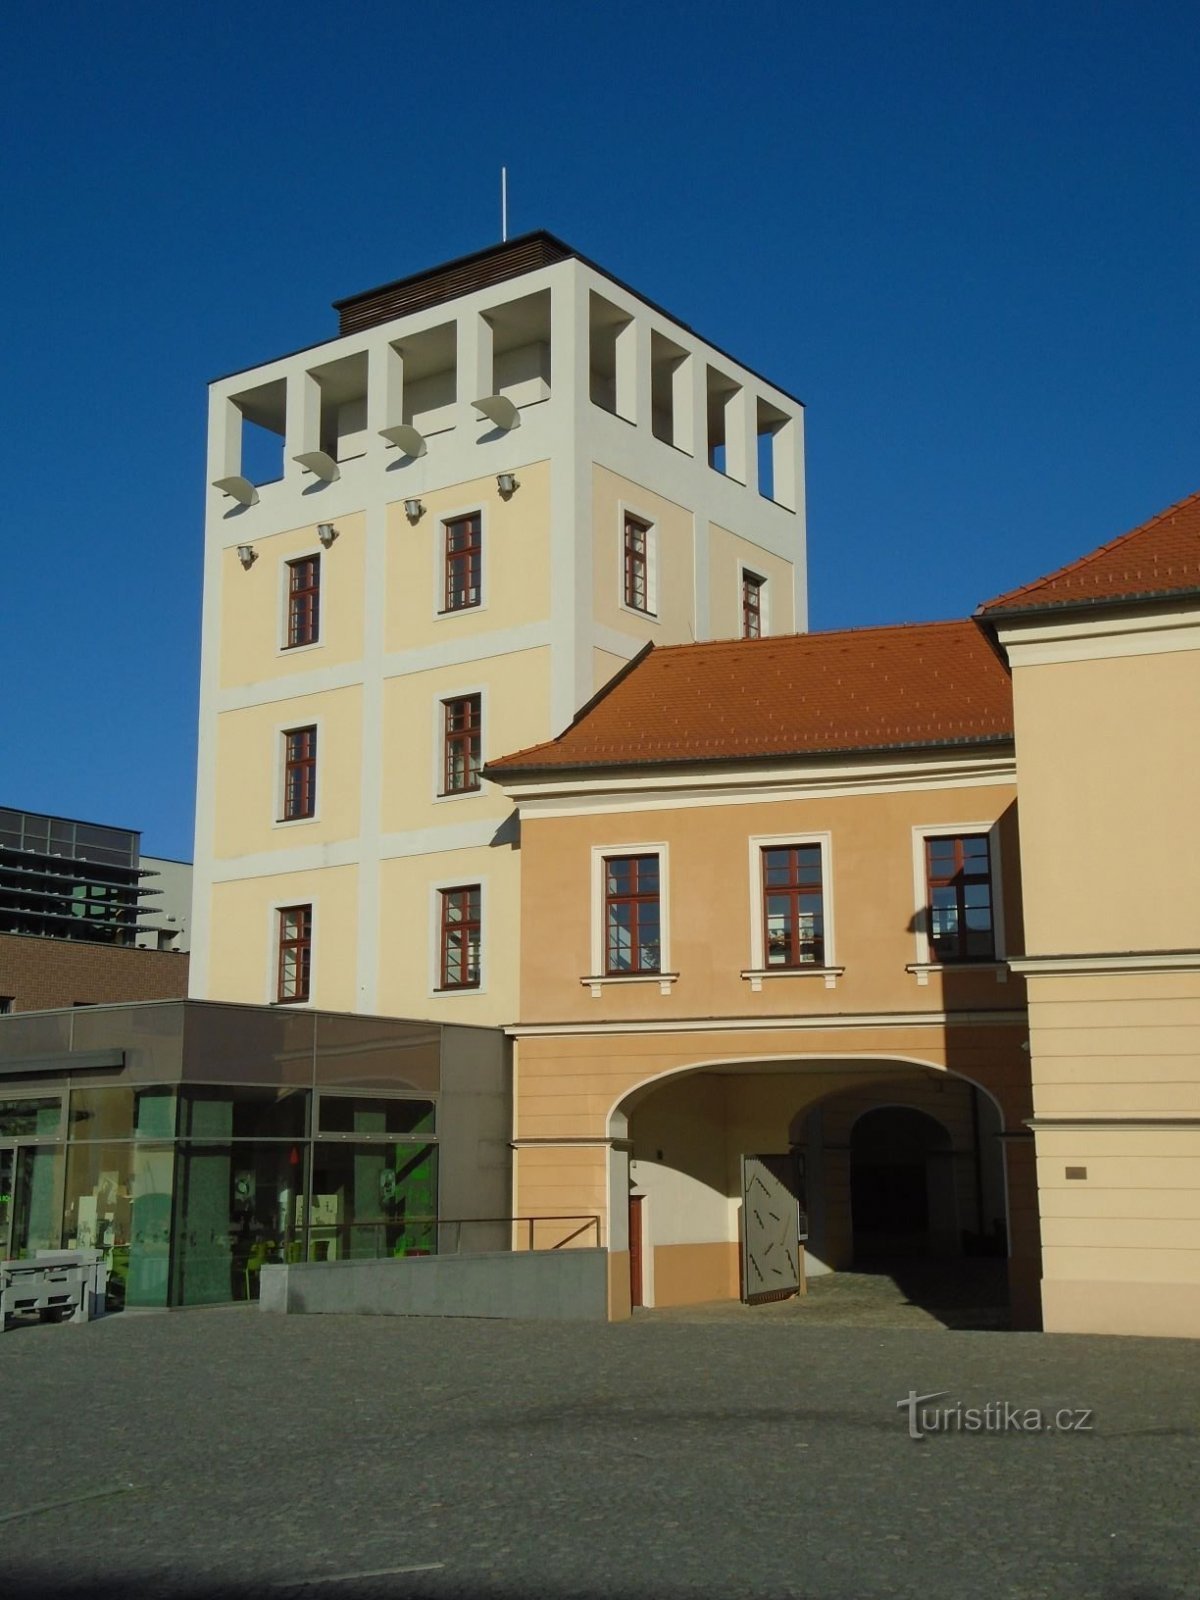 L'ancien château d'eau de Kozinka (Hradec Králové, 17.11.2018/XNUMX/XNUMX)